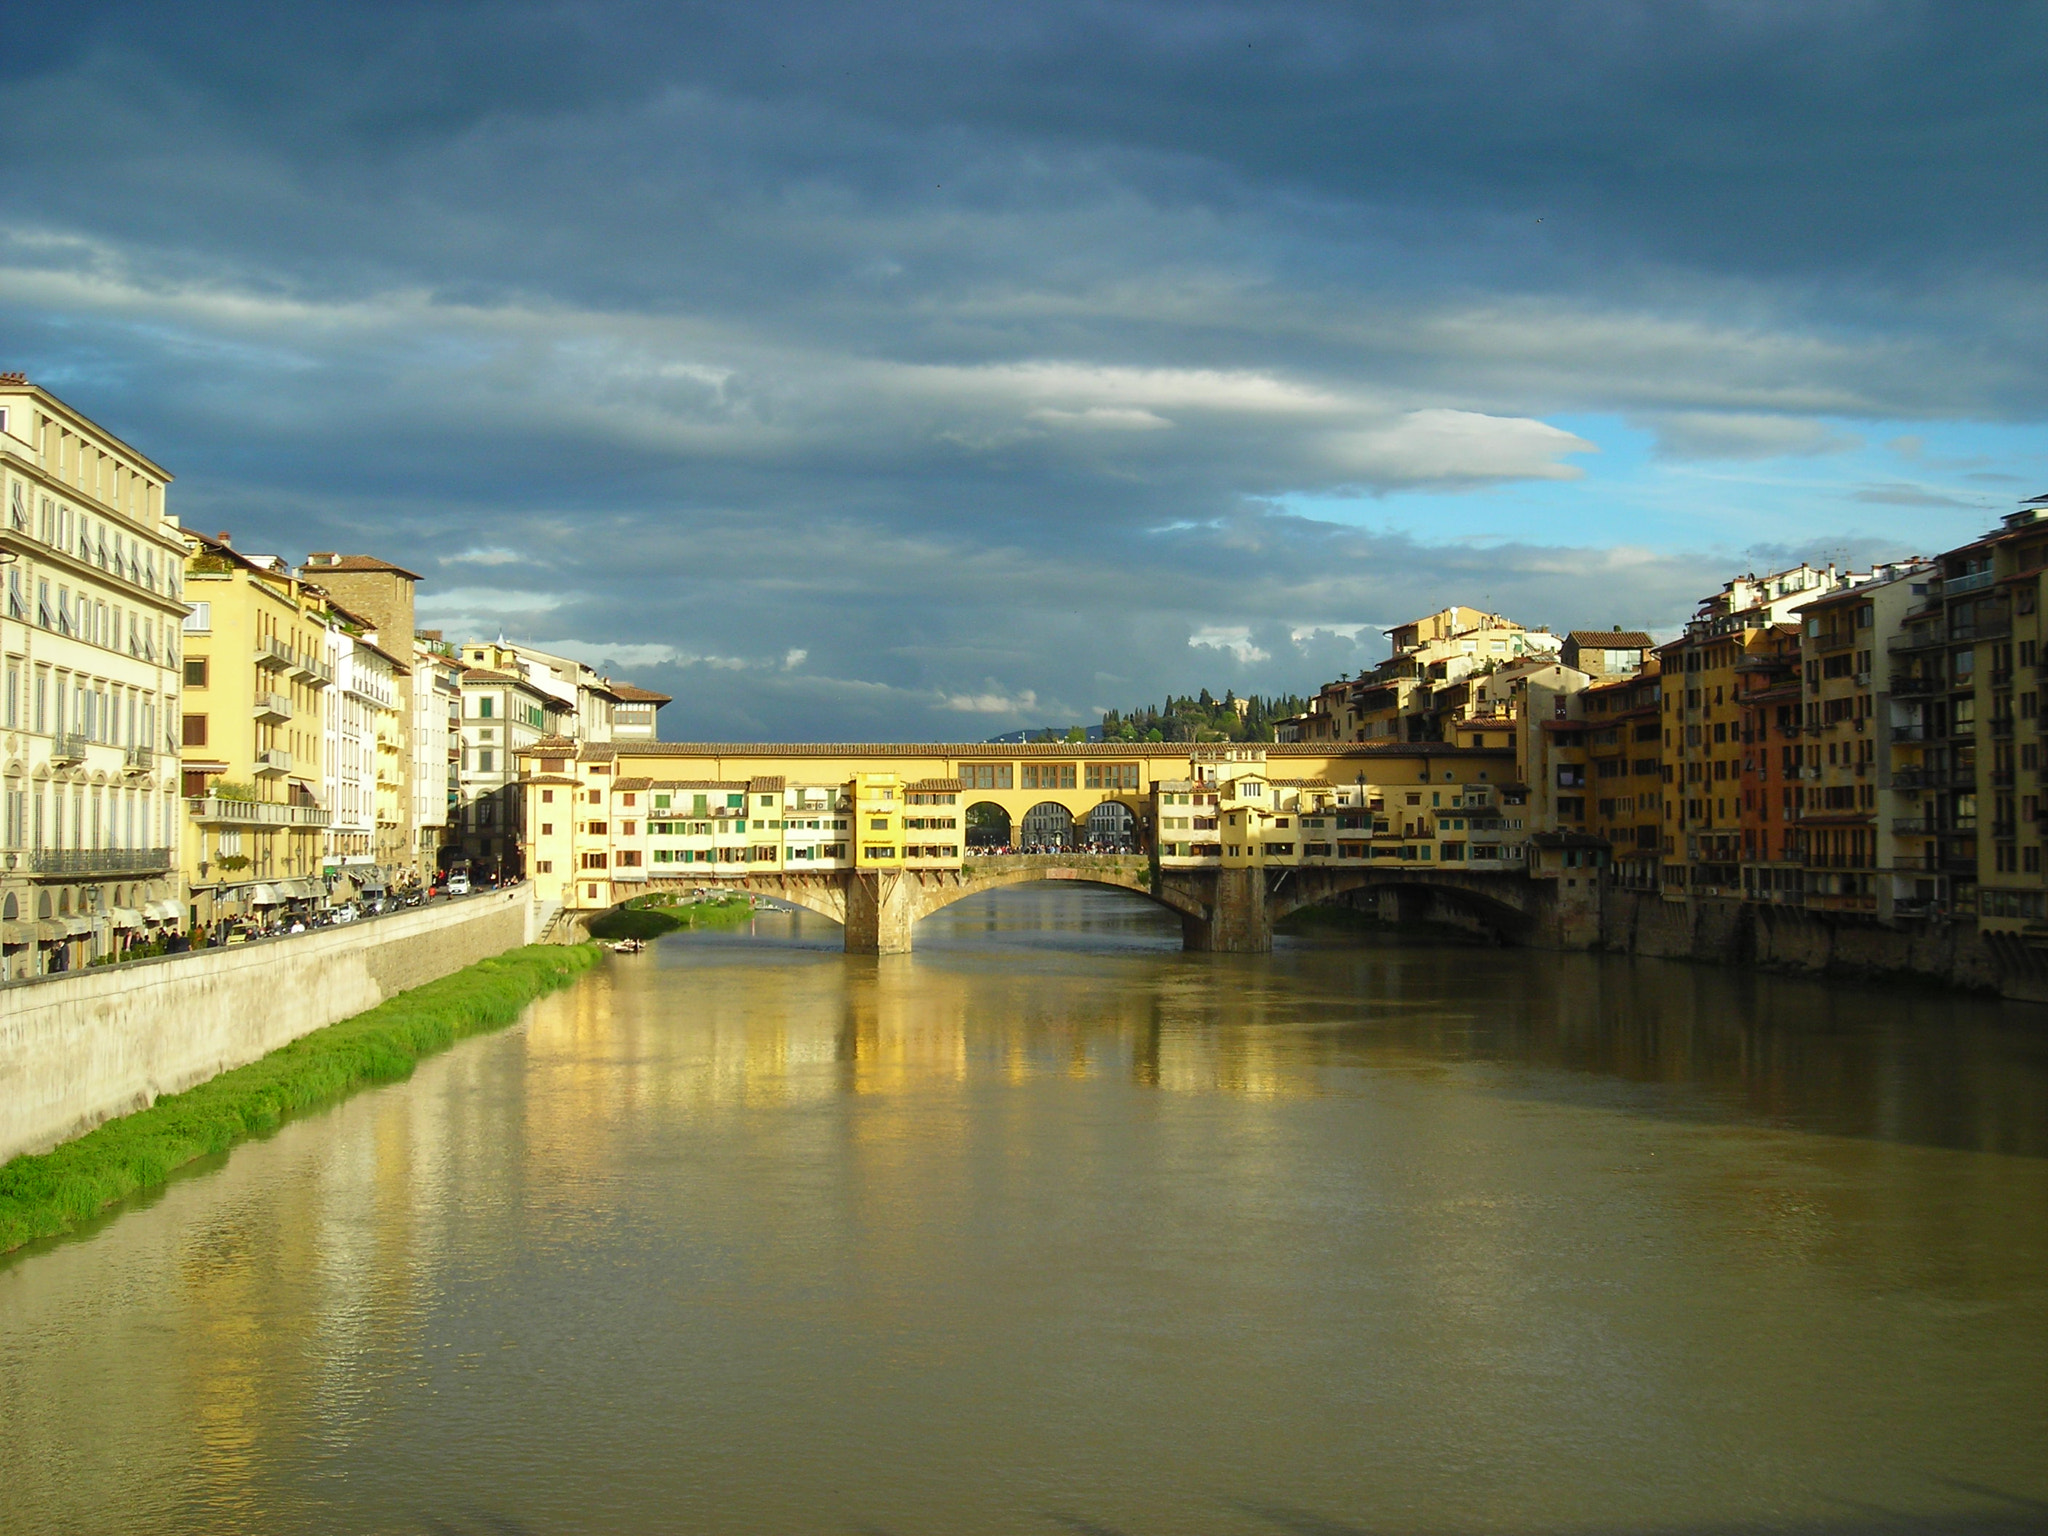 Nikon COOLPIX L2 sample photo. Firenze-ponte vecchio photography